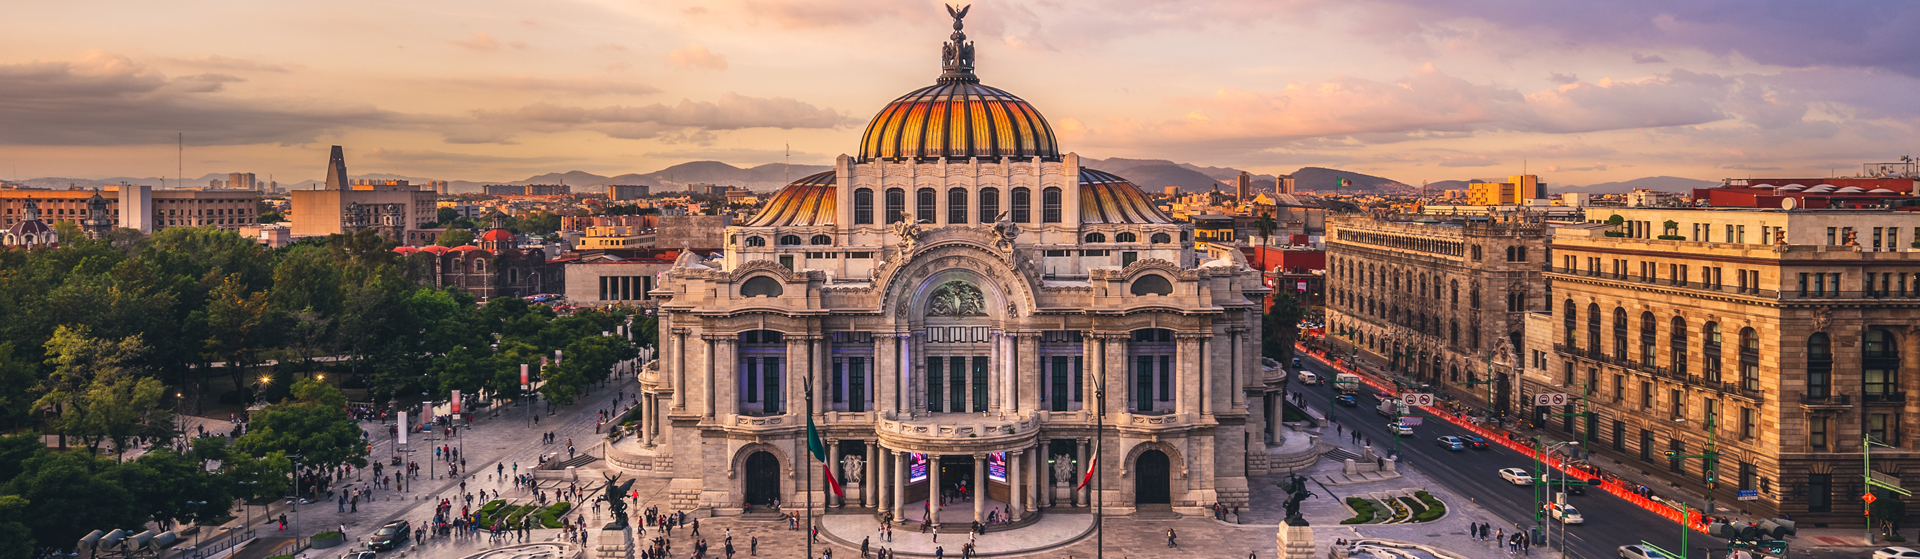 Mexico City Palace